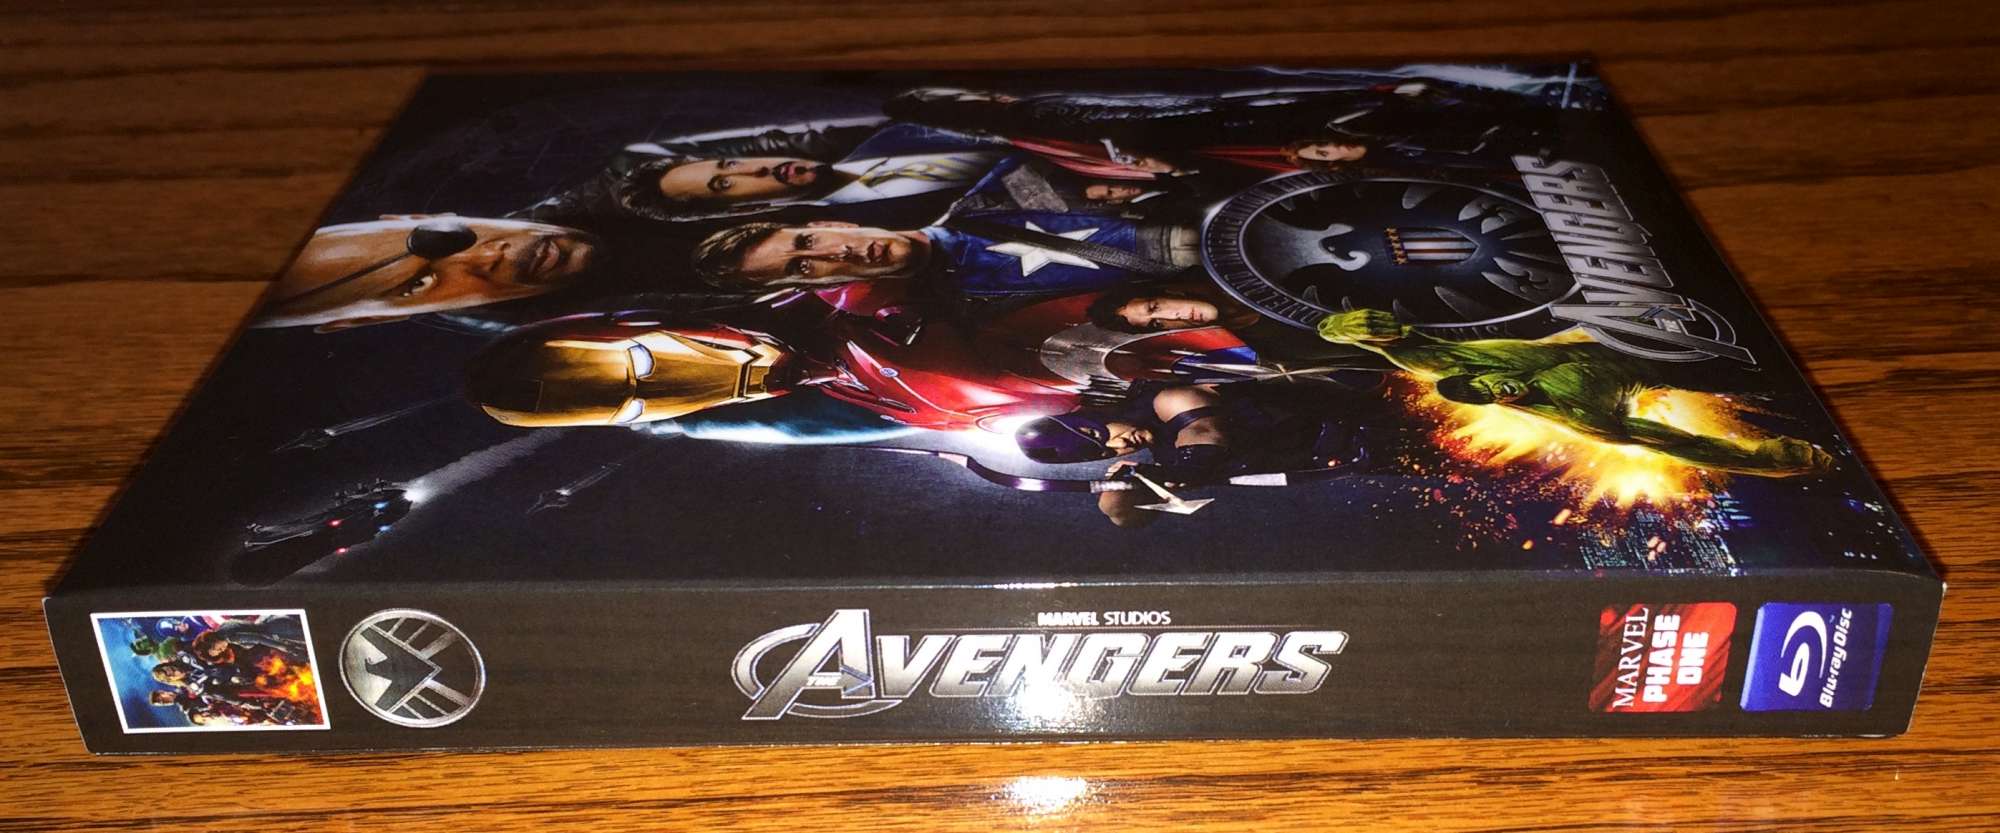 The Avengers Steelbook Slipcover  (2).jpg